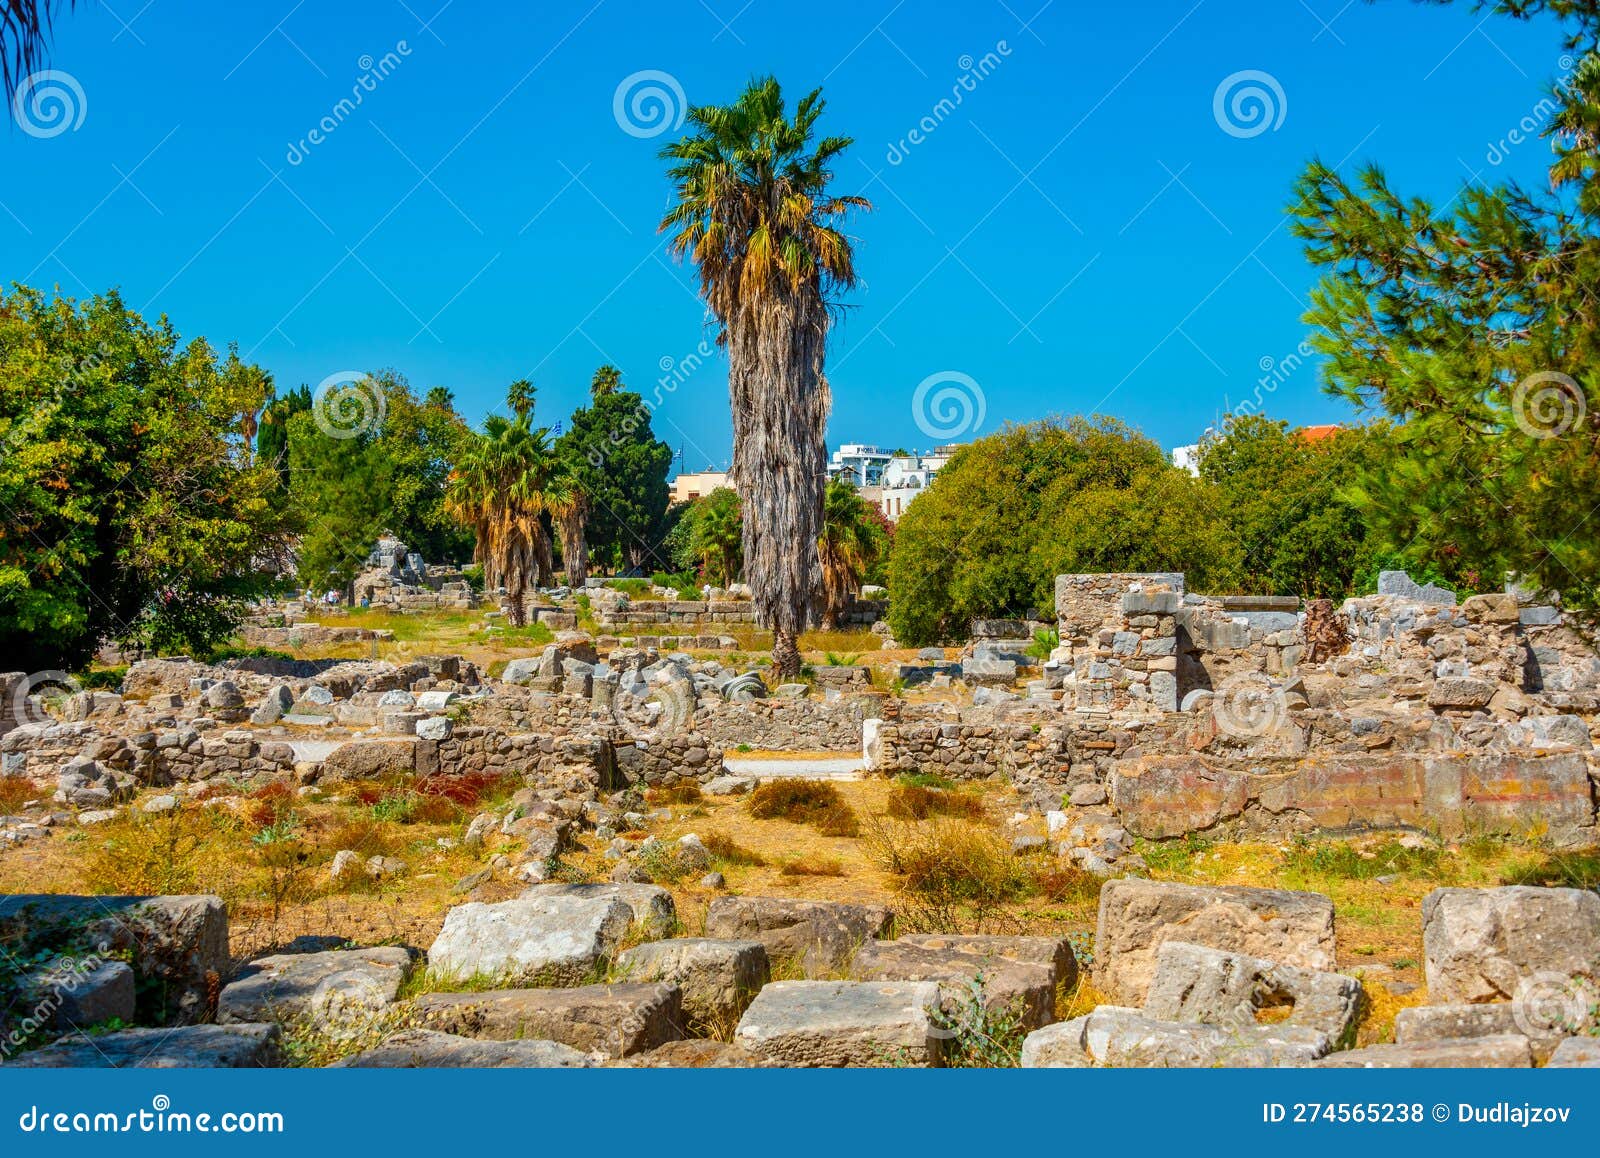 Ancient agora at Greek island Kos.